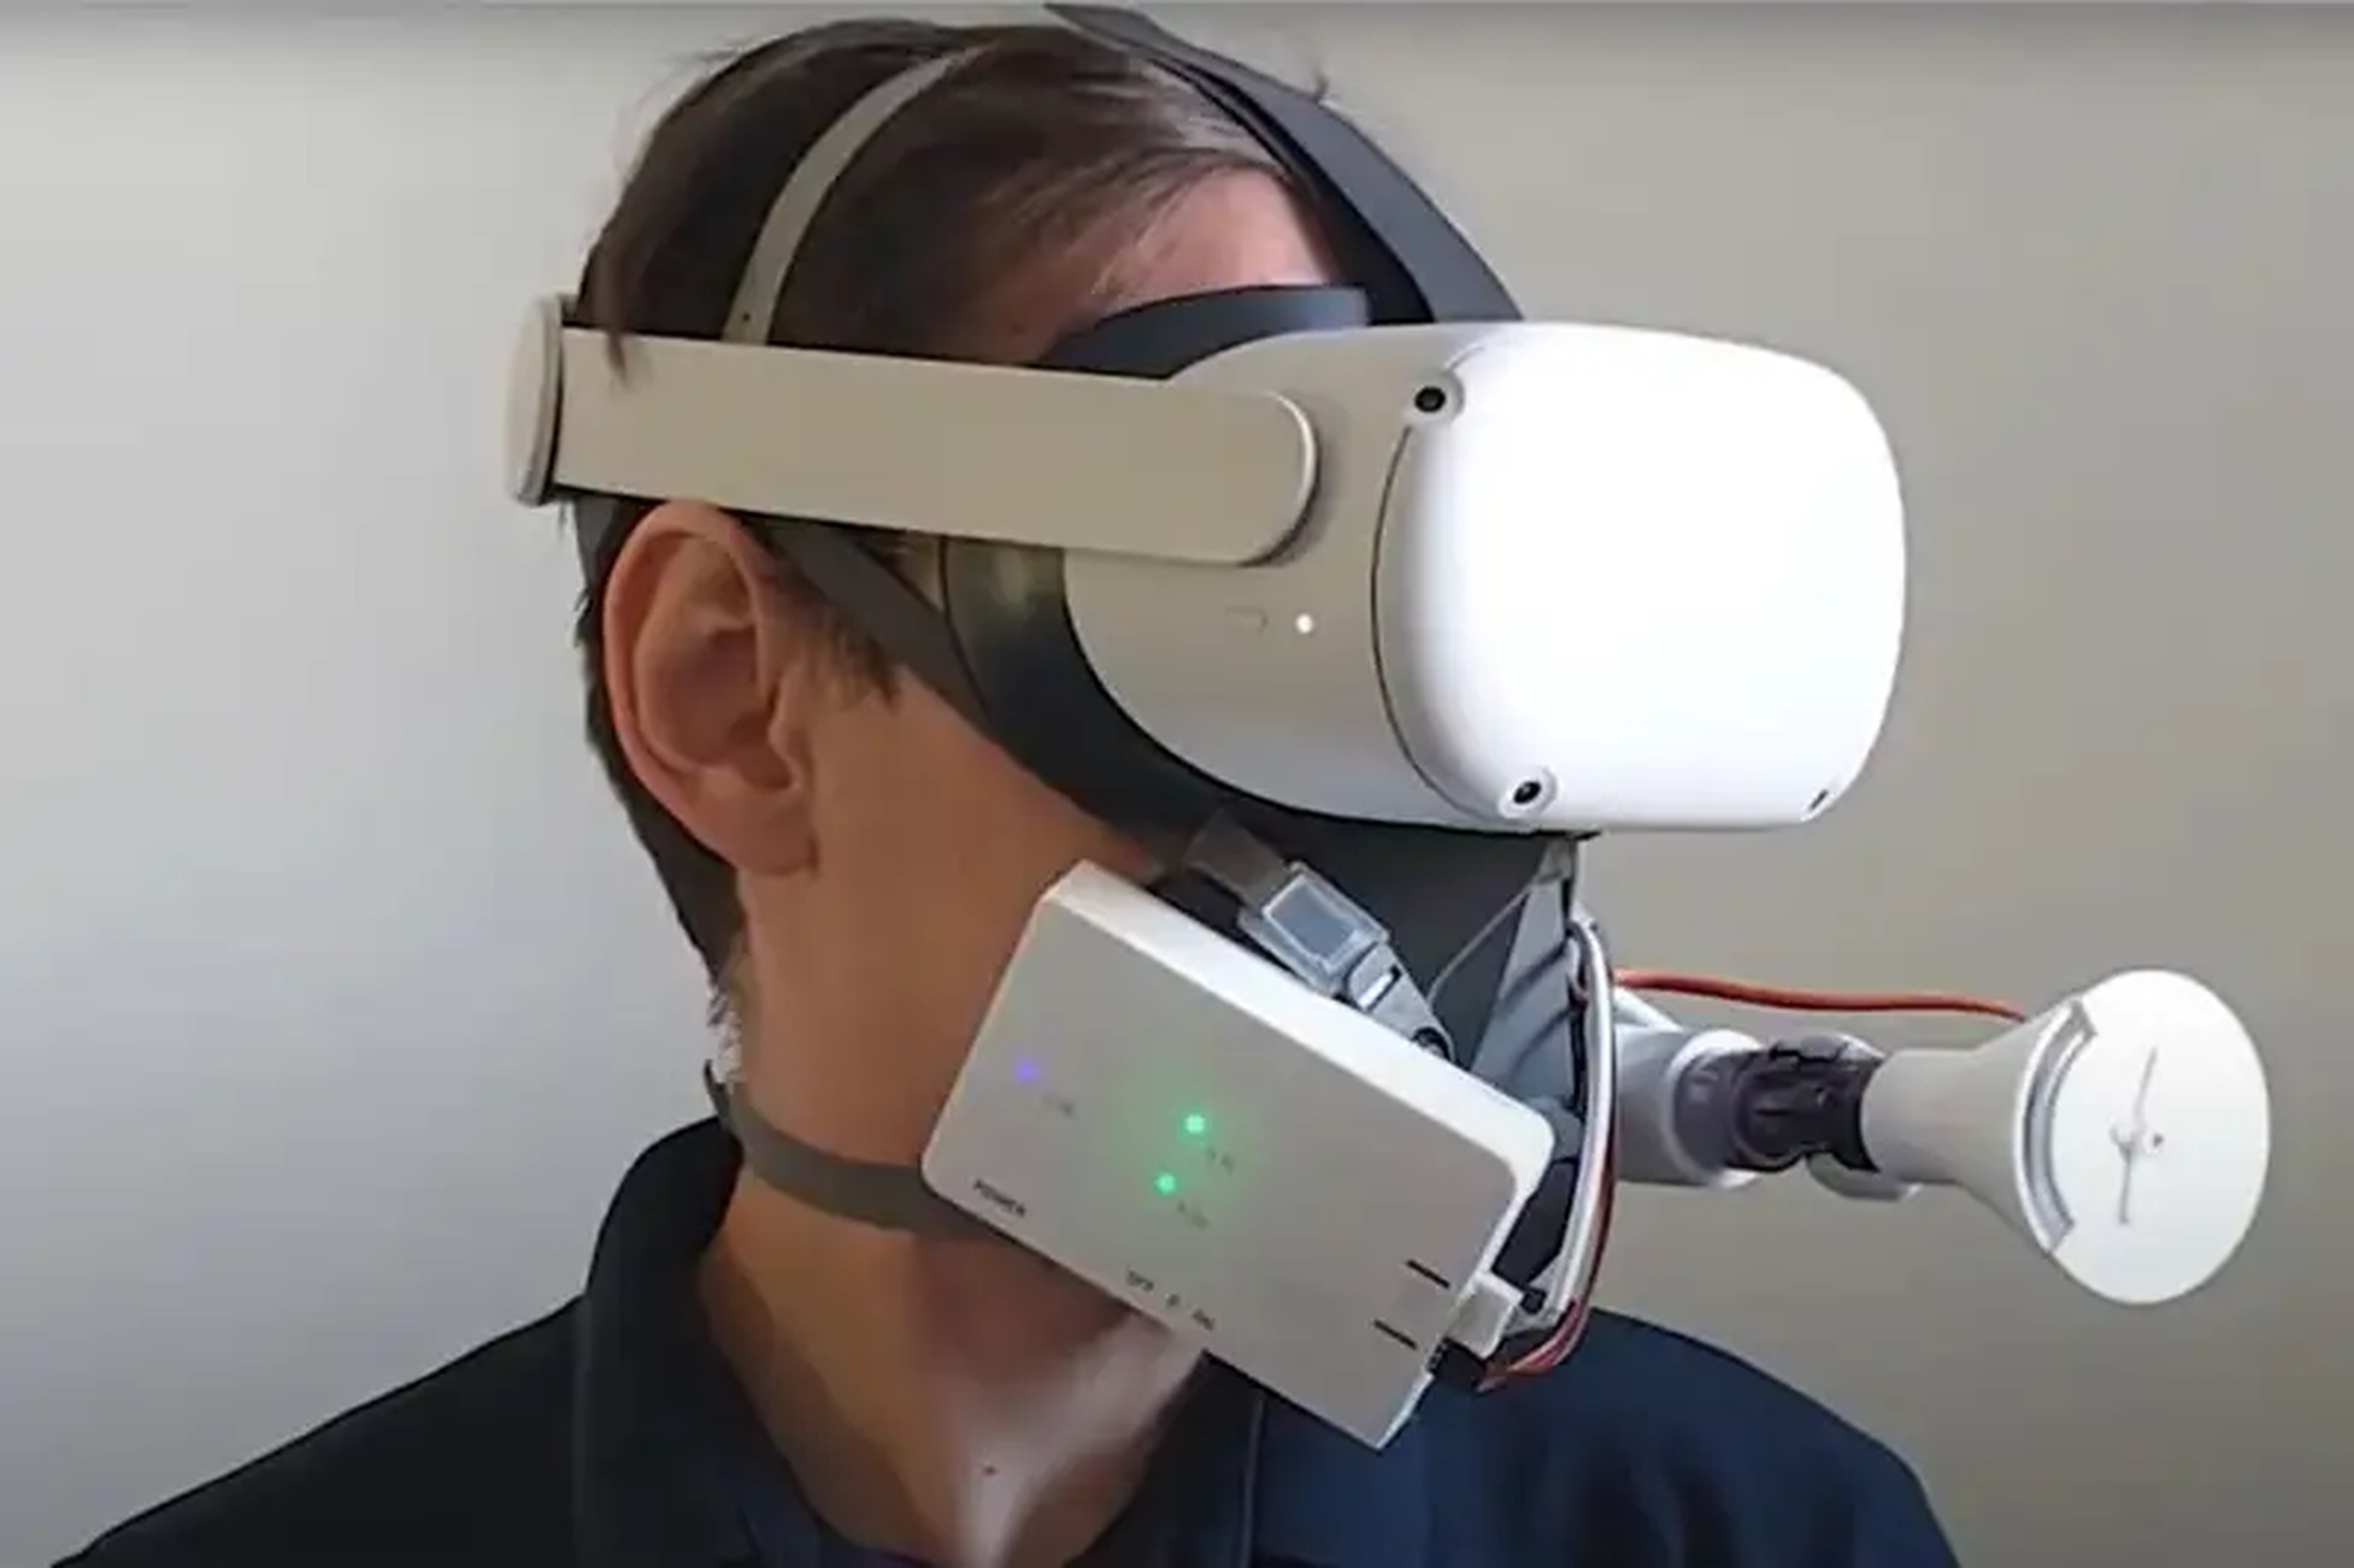 Casco de realidad virtual